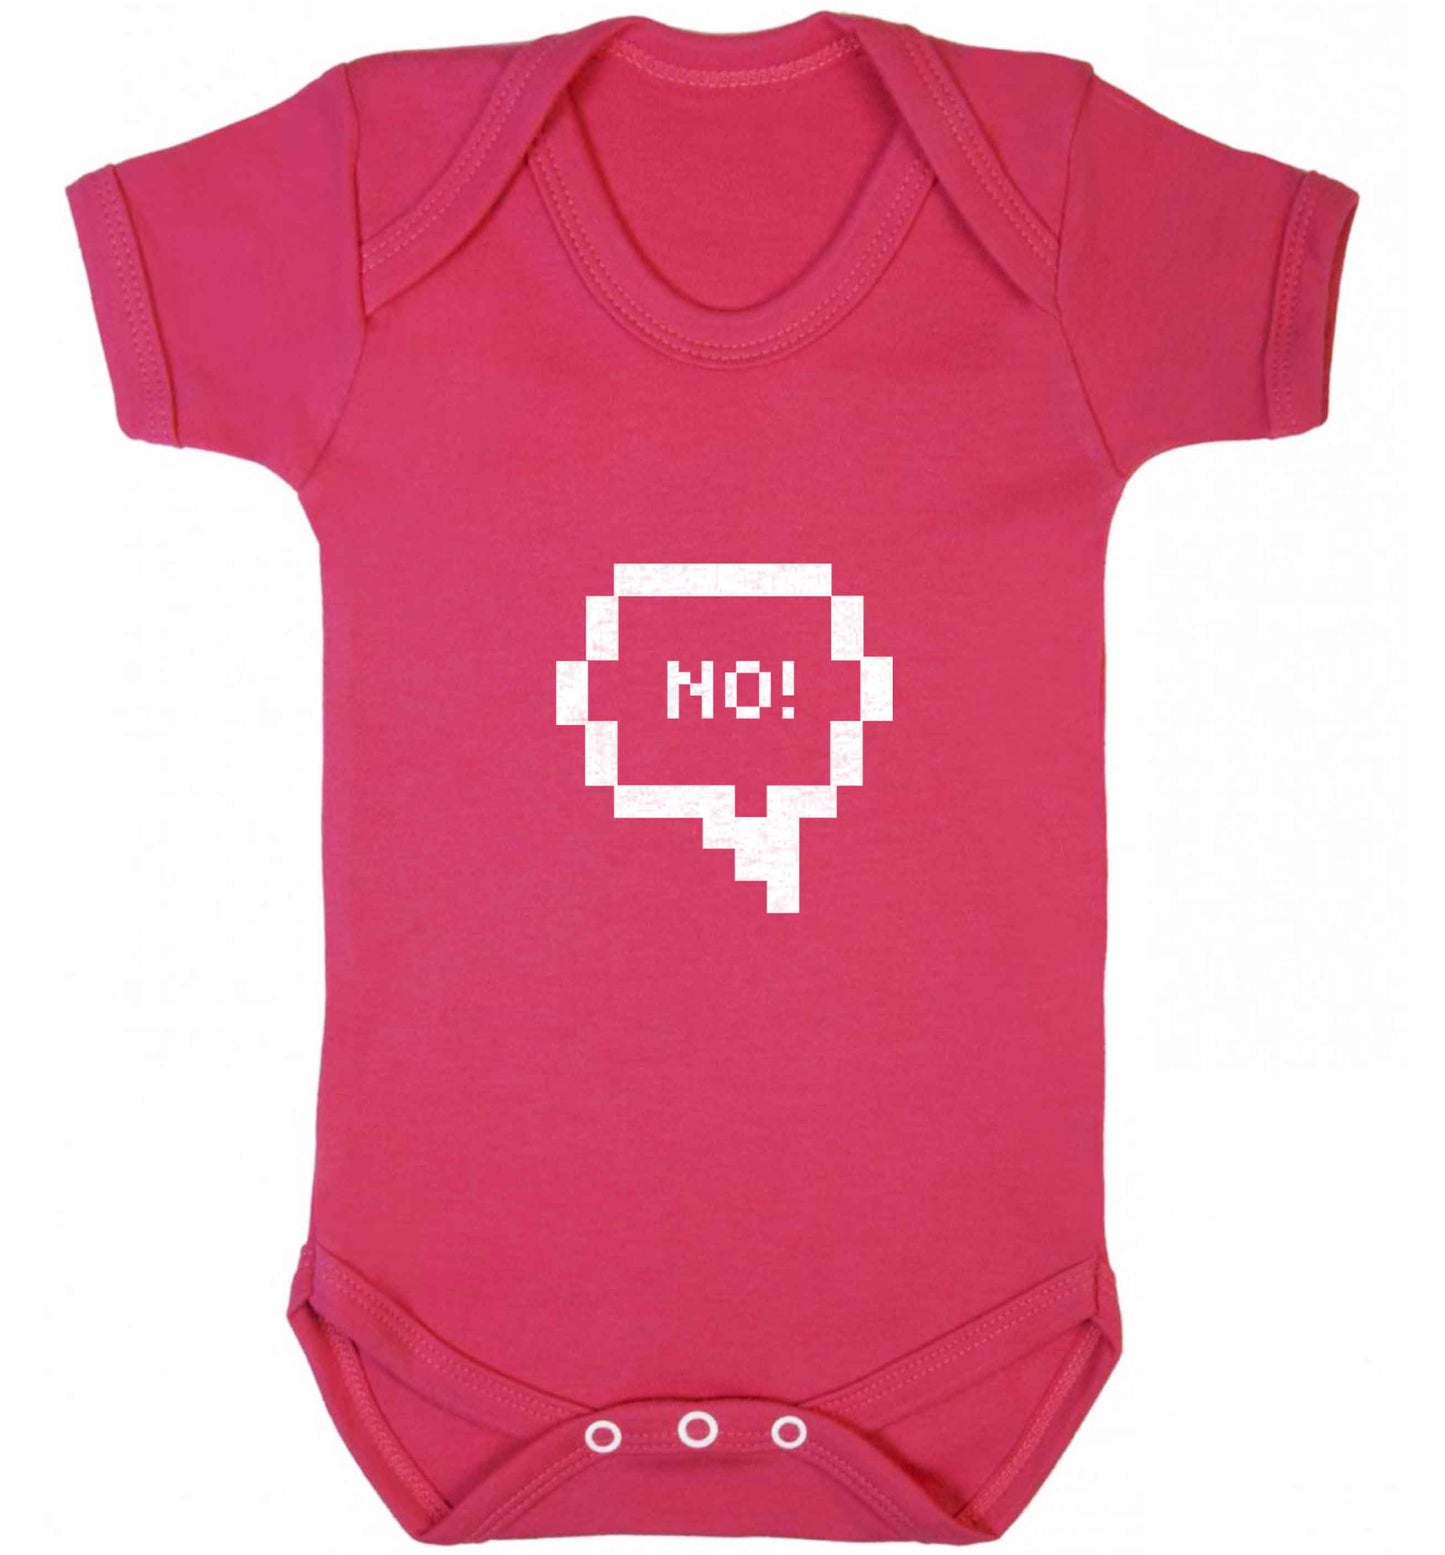 No baby vest dark pink 18-24 months